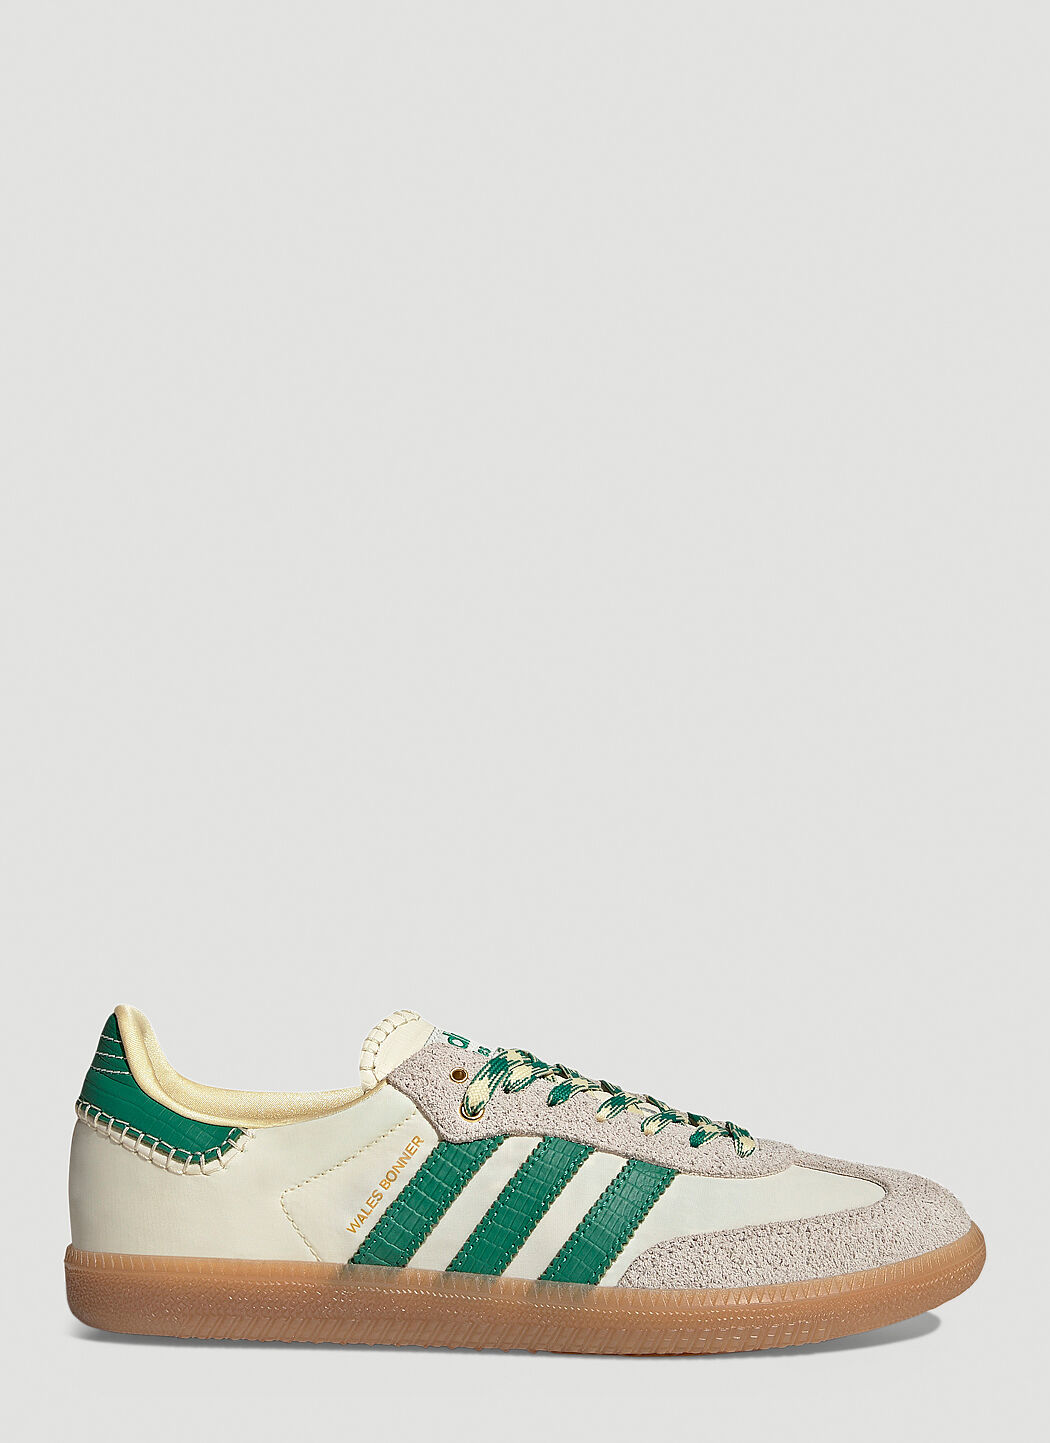 adidas by Wales Bonner Samba Sneakers Green awb0354010